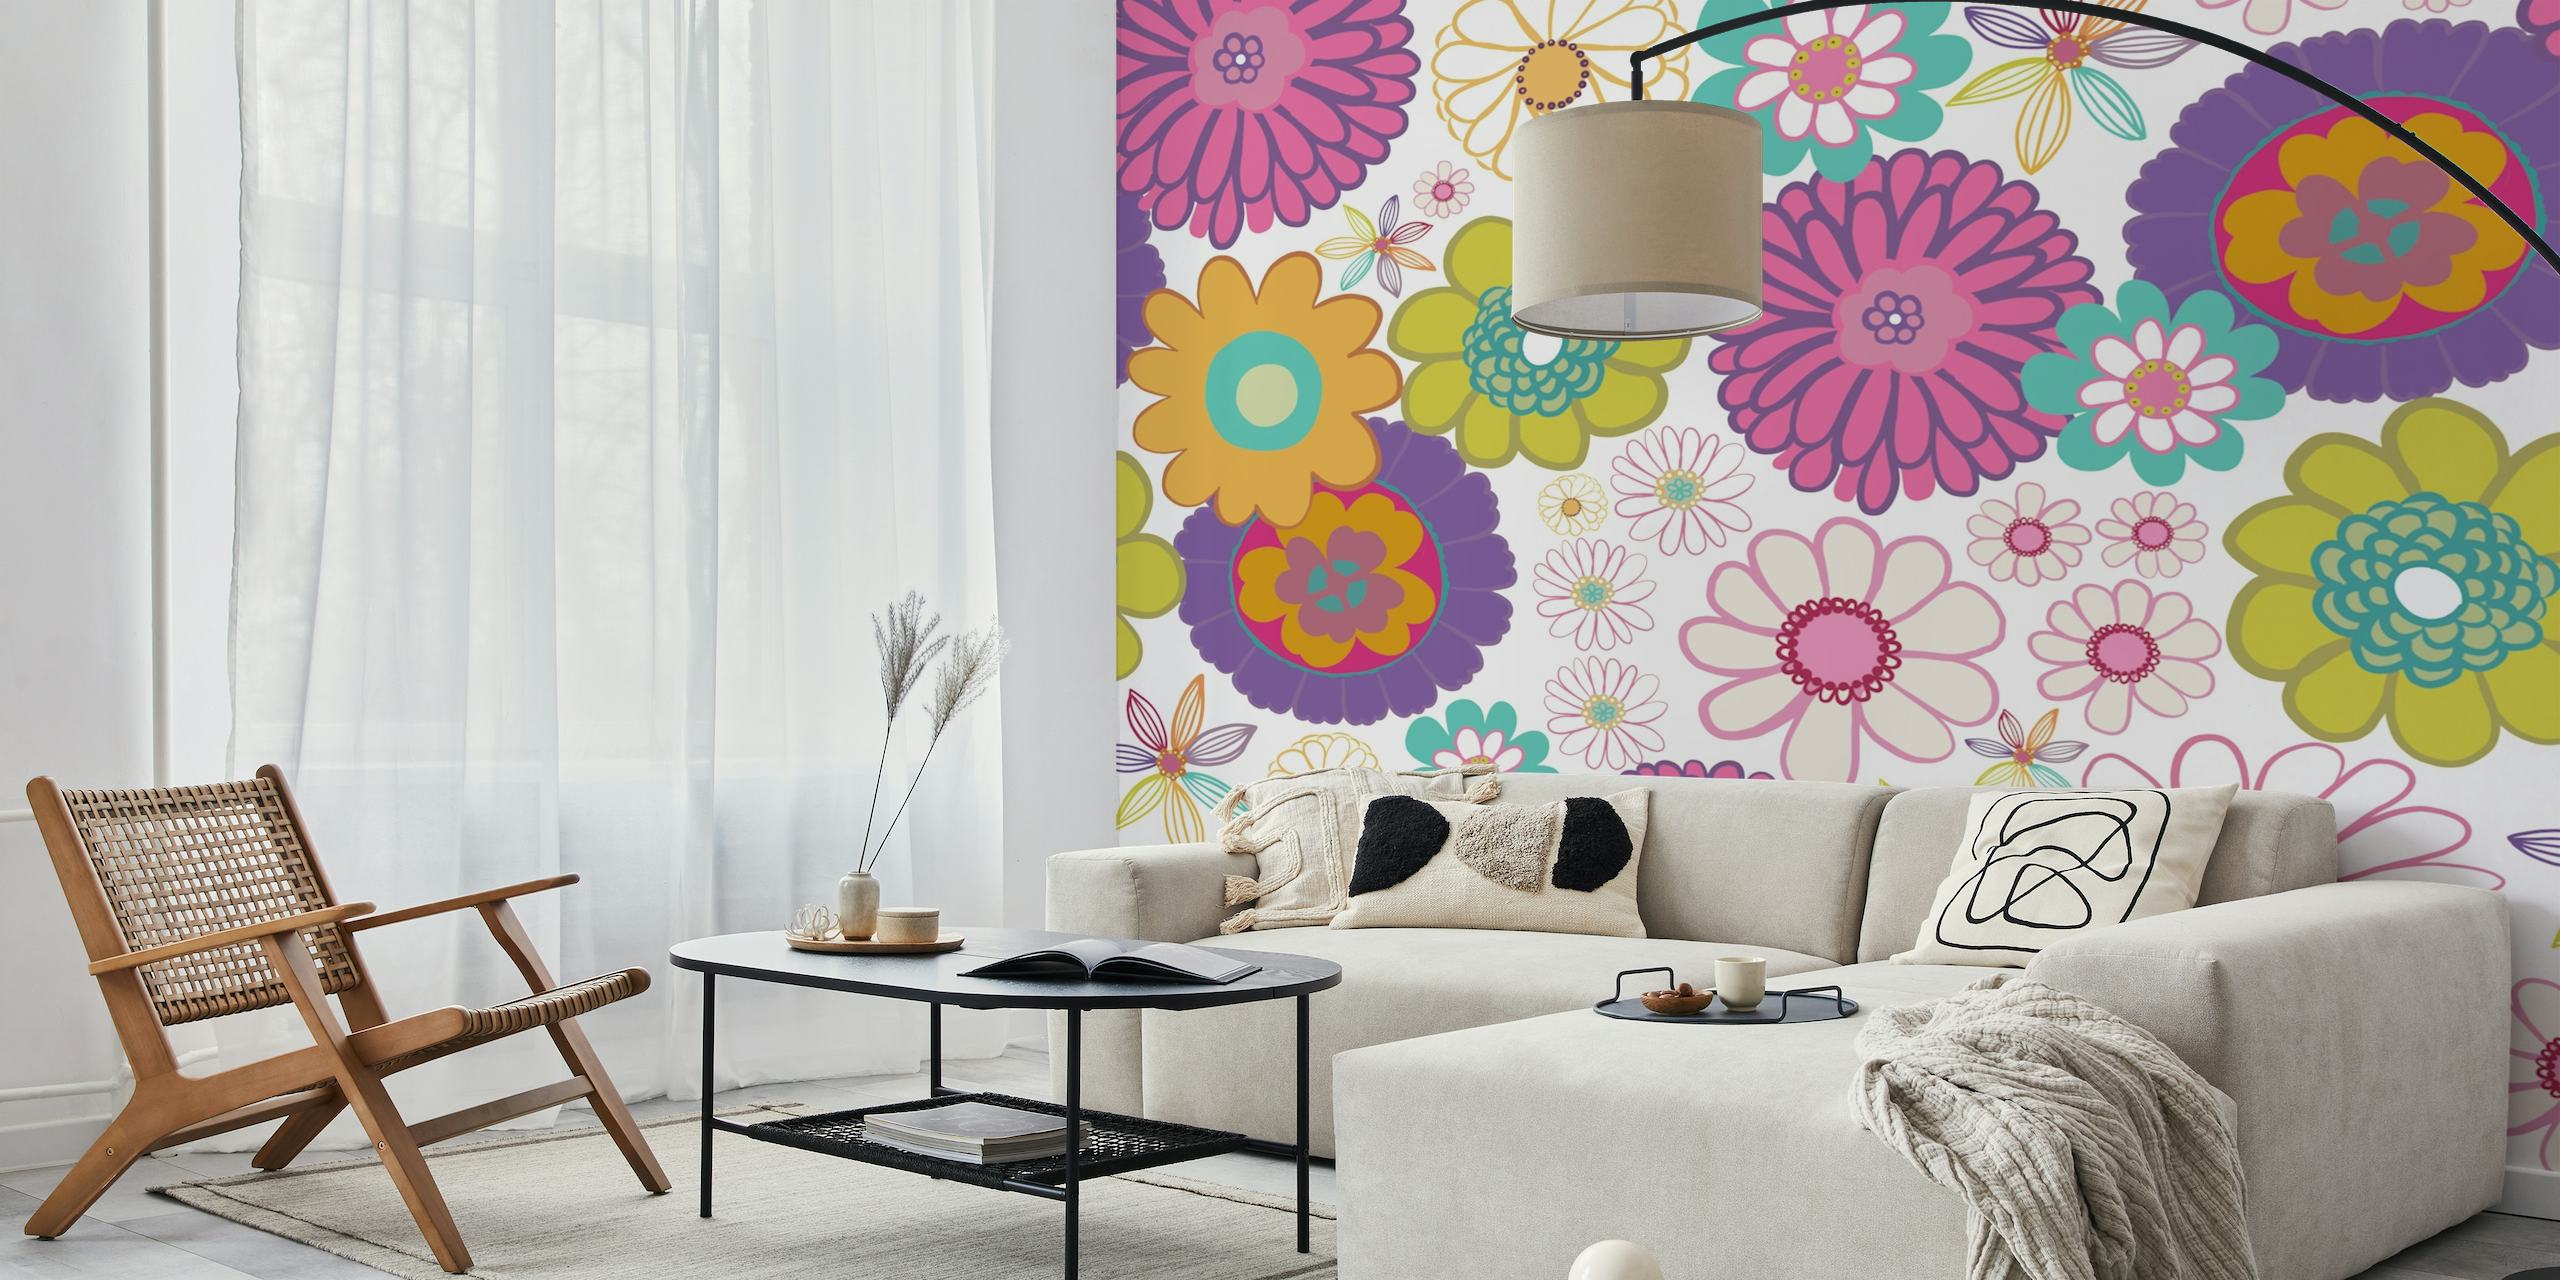 Fargerikt floral mønstret veggmaleri med en blanding av vintage og moderne stiler